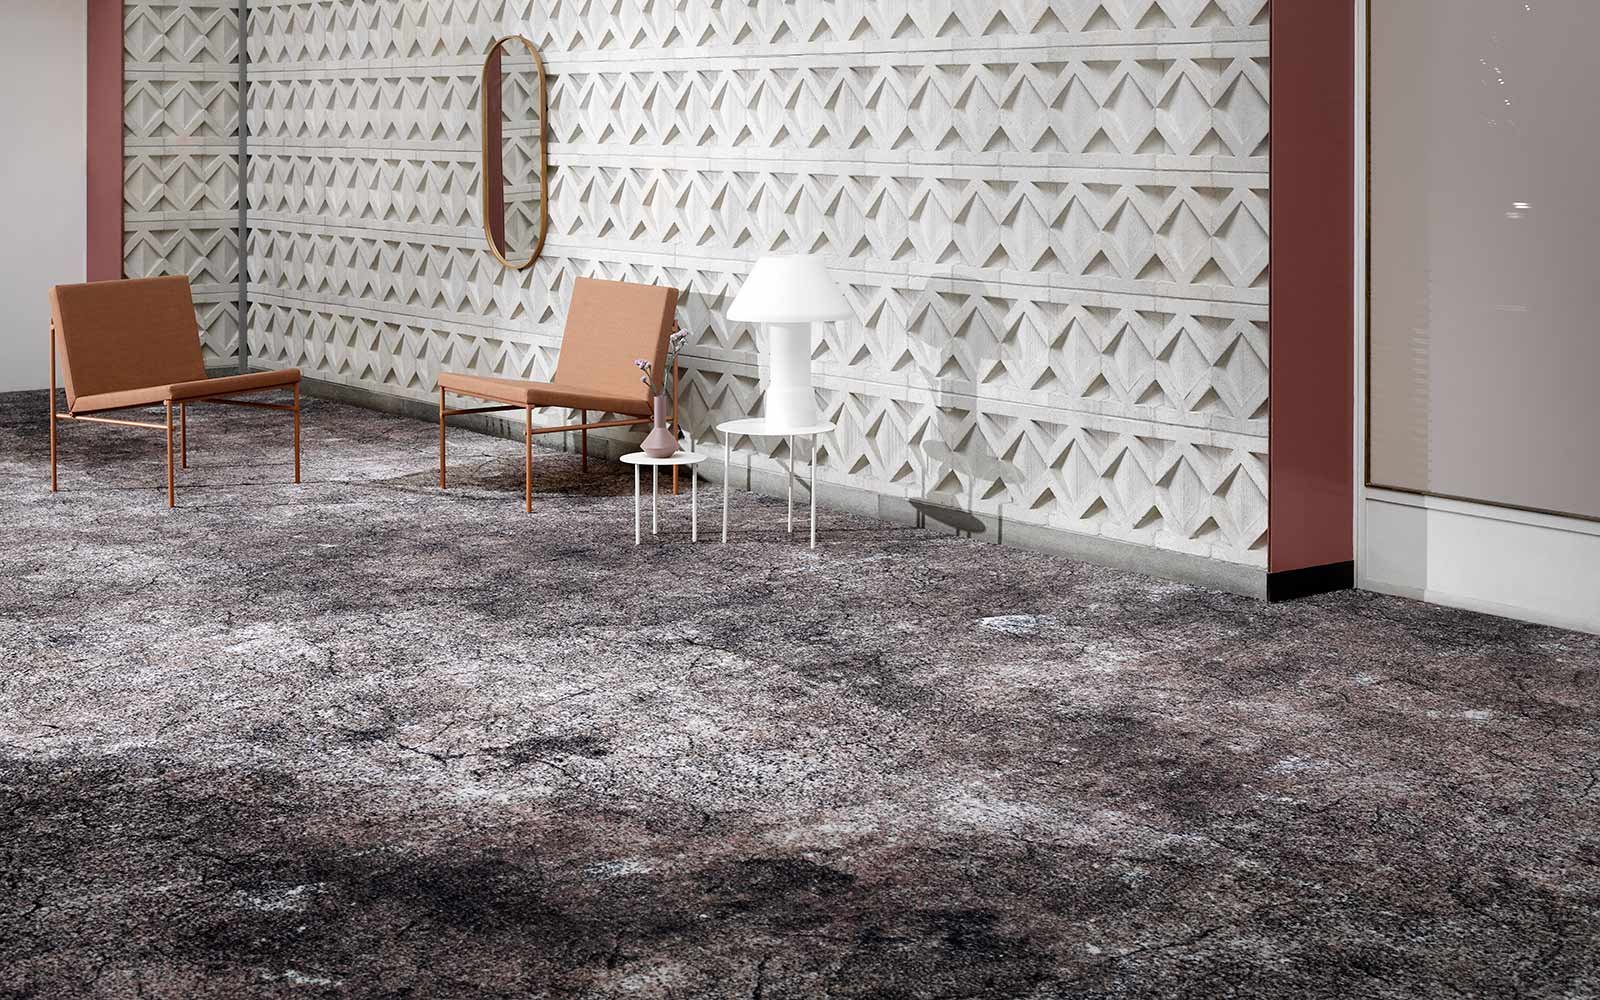 Teppichboden mit Struktur in braun-grau Tönen und Sitzmöglichkeiten